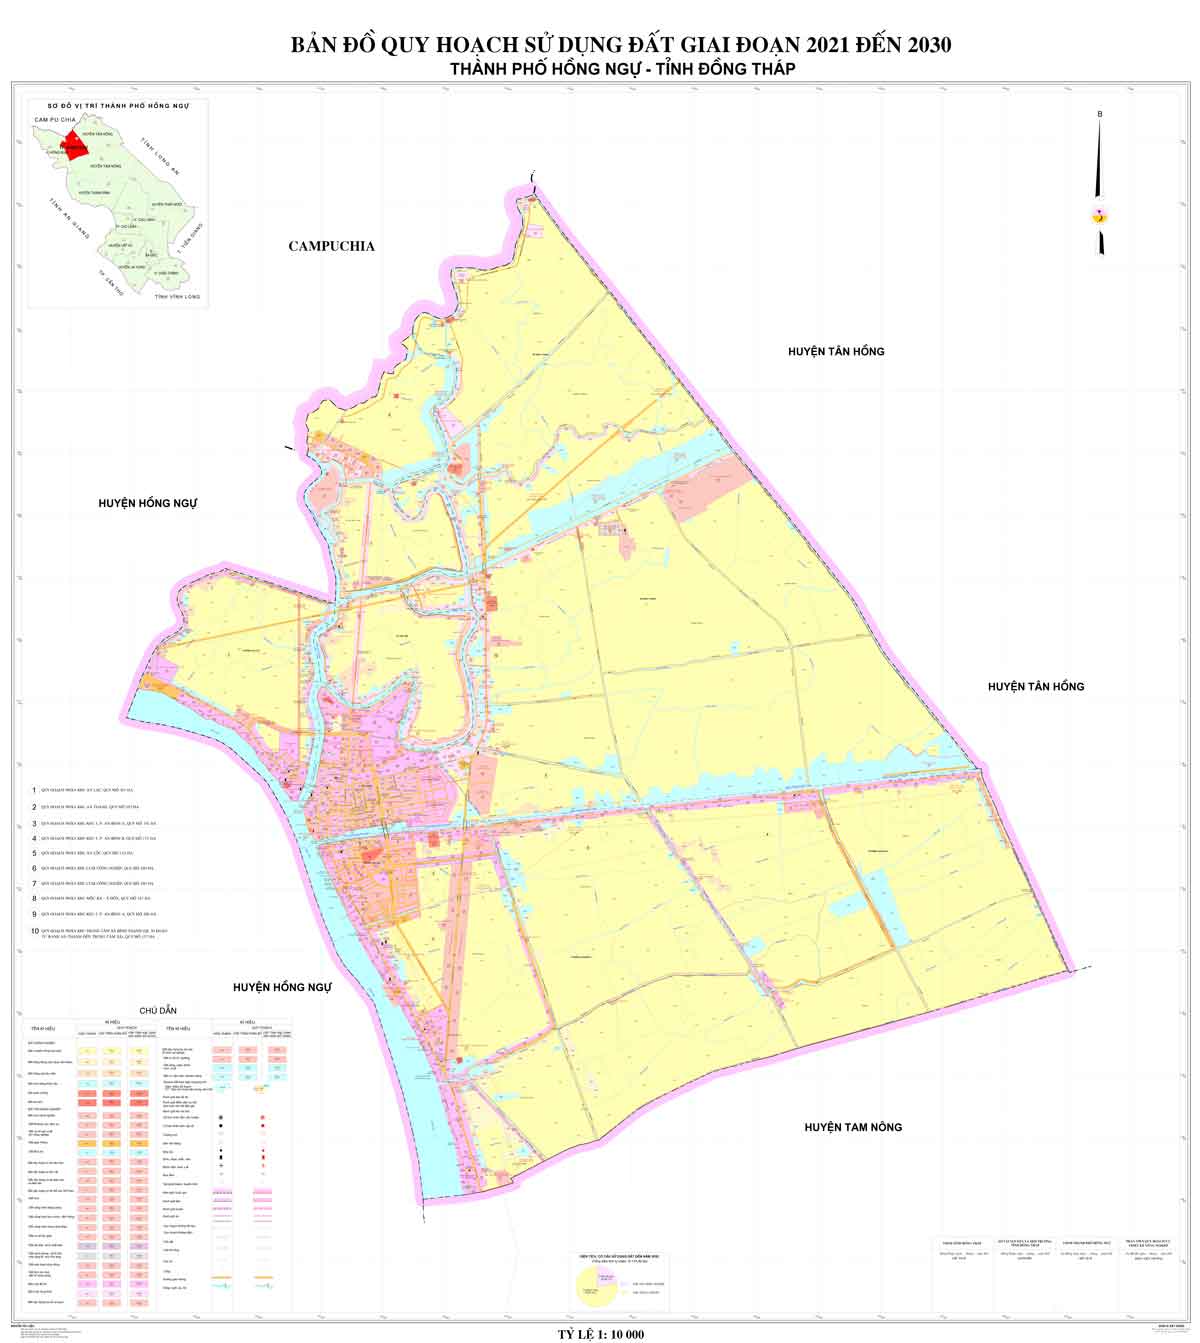 Bản đồ QHSDĐ TP Hồng Ngự đến năm 2030